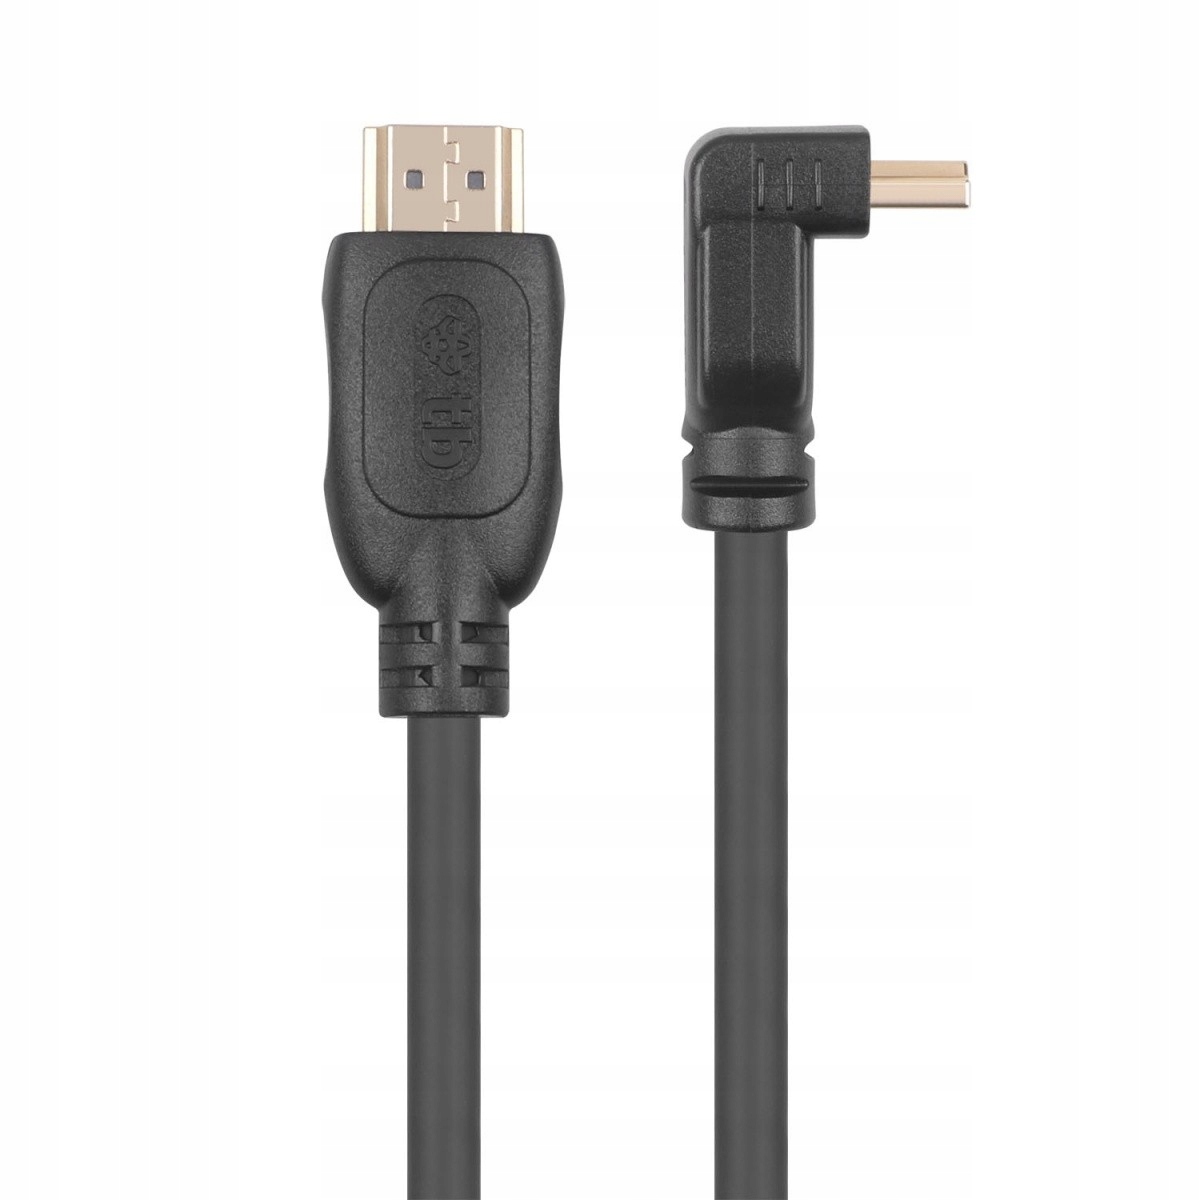 TB кабель HDMI v 2.0 позолочений 1.8 м кутовий бренд TB